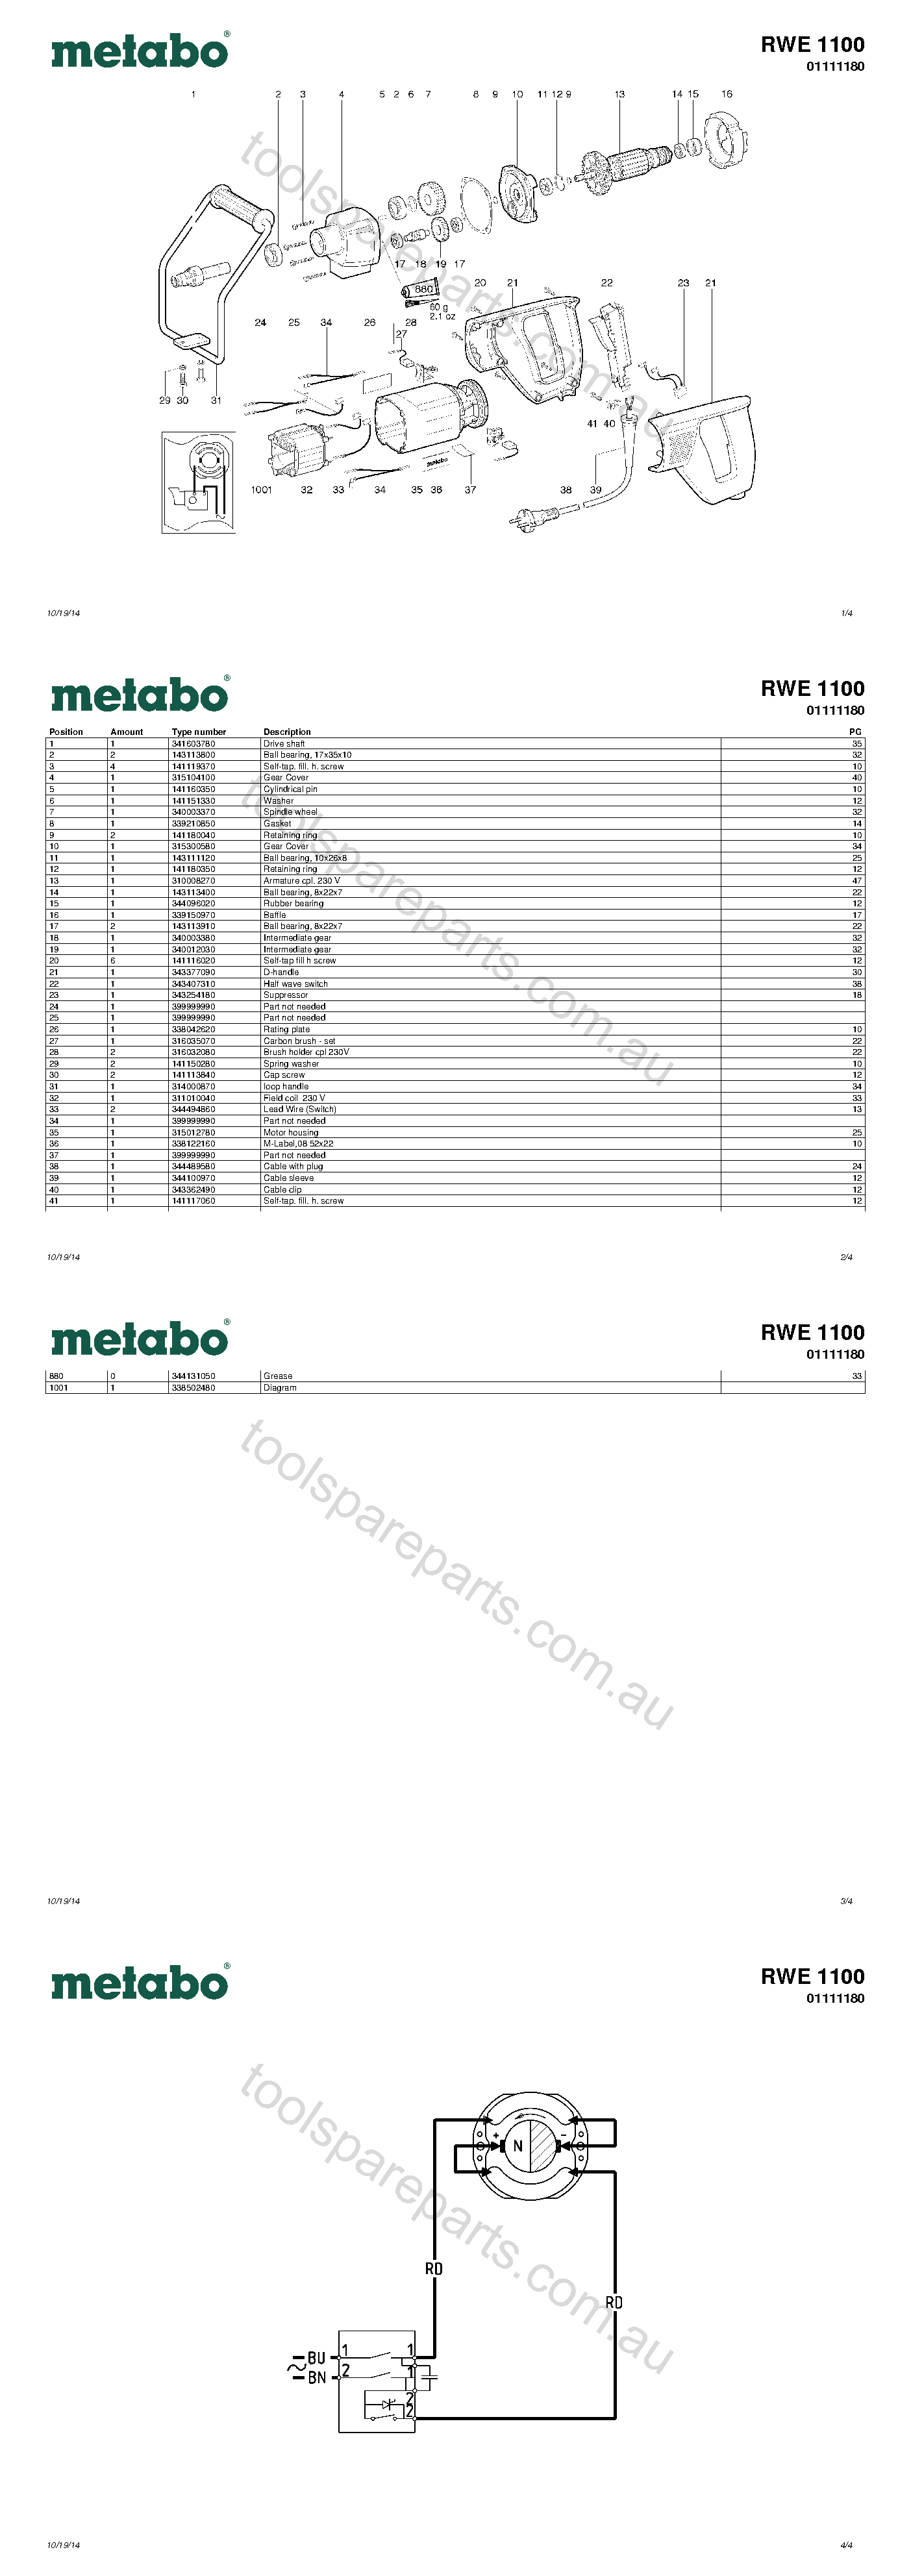 Metabo RWE 1100 01111180  Diagram 1